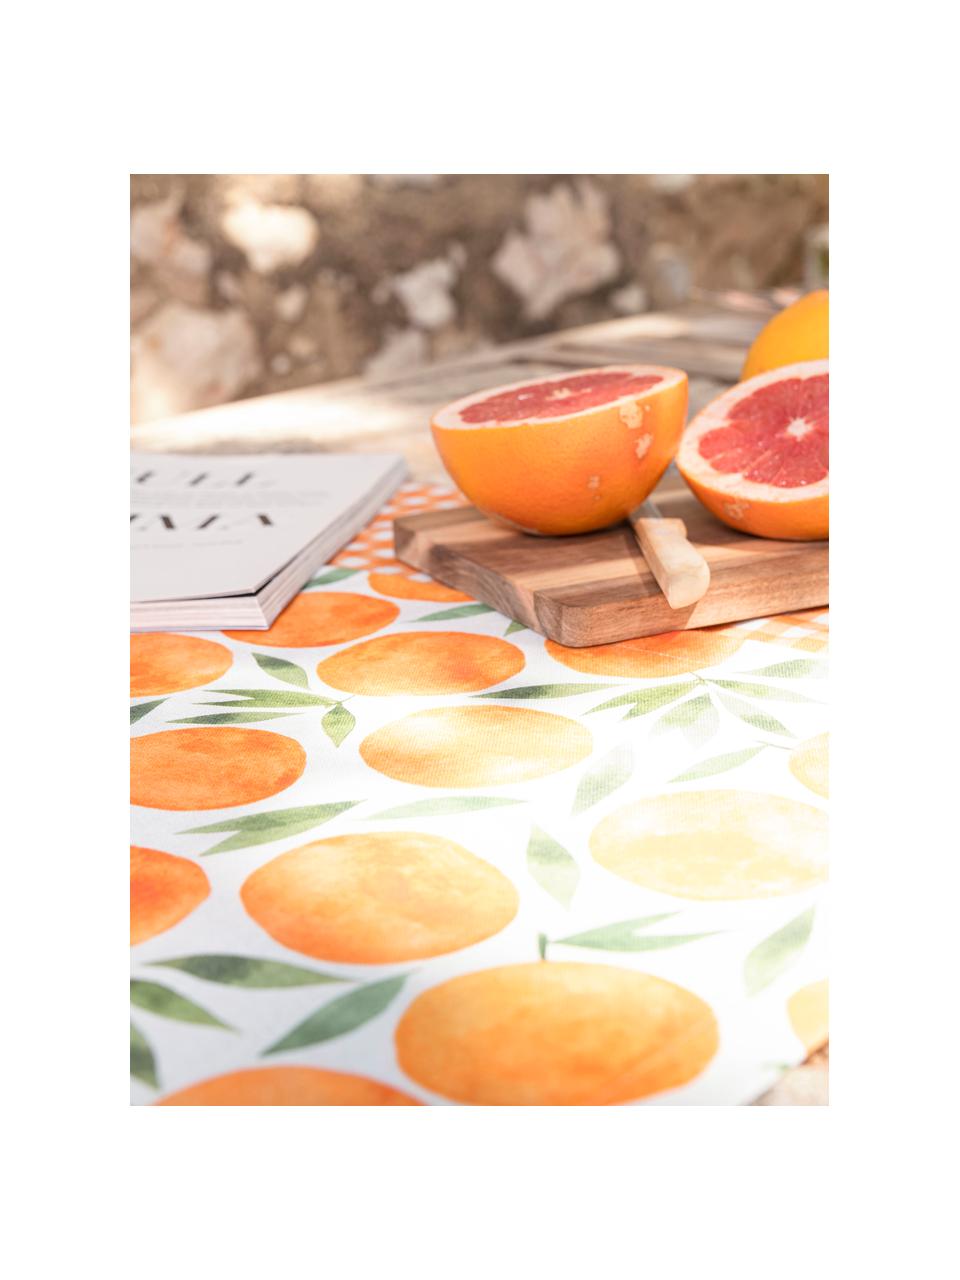 Tafelloper Picnic met sinaasappel motief, 85% katoen, 15% linnen, Oranje, groen, wit, B 40 x L 145 cm